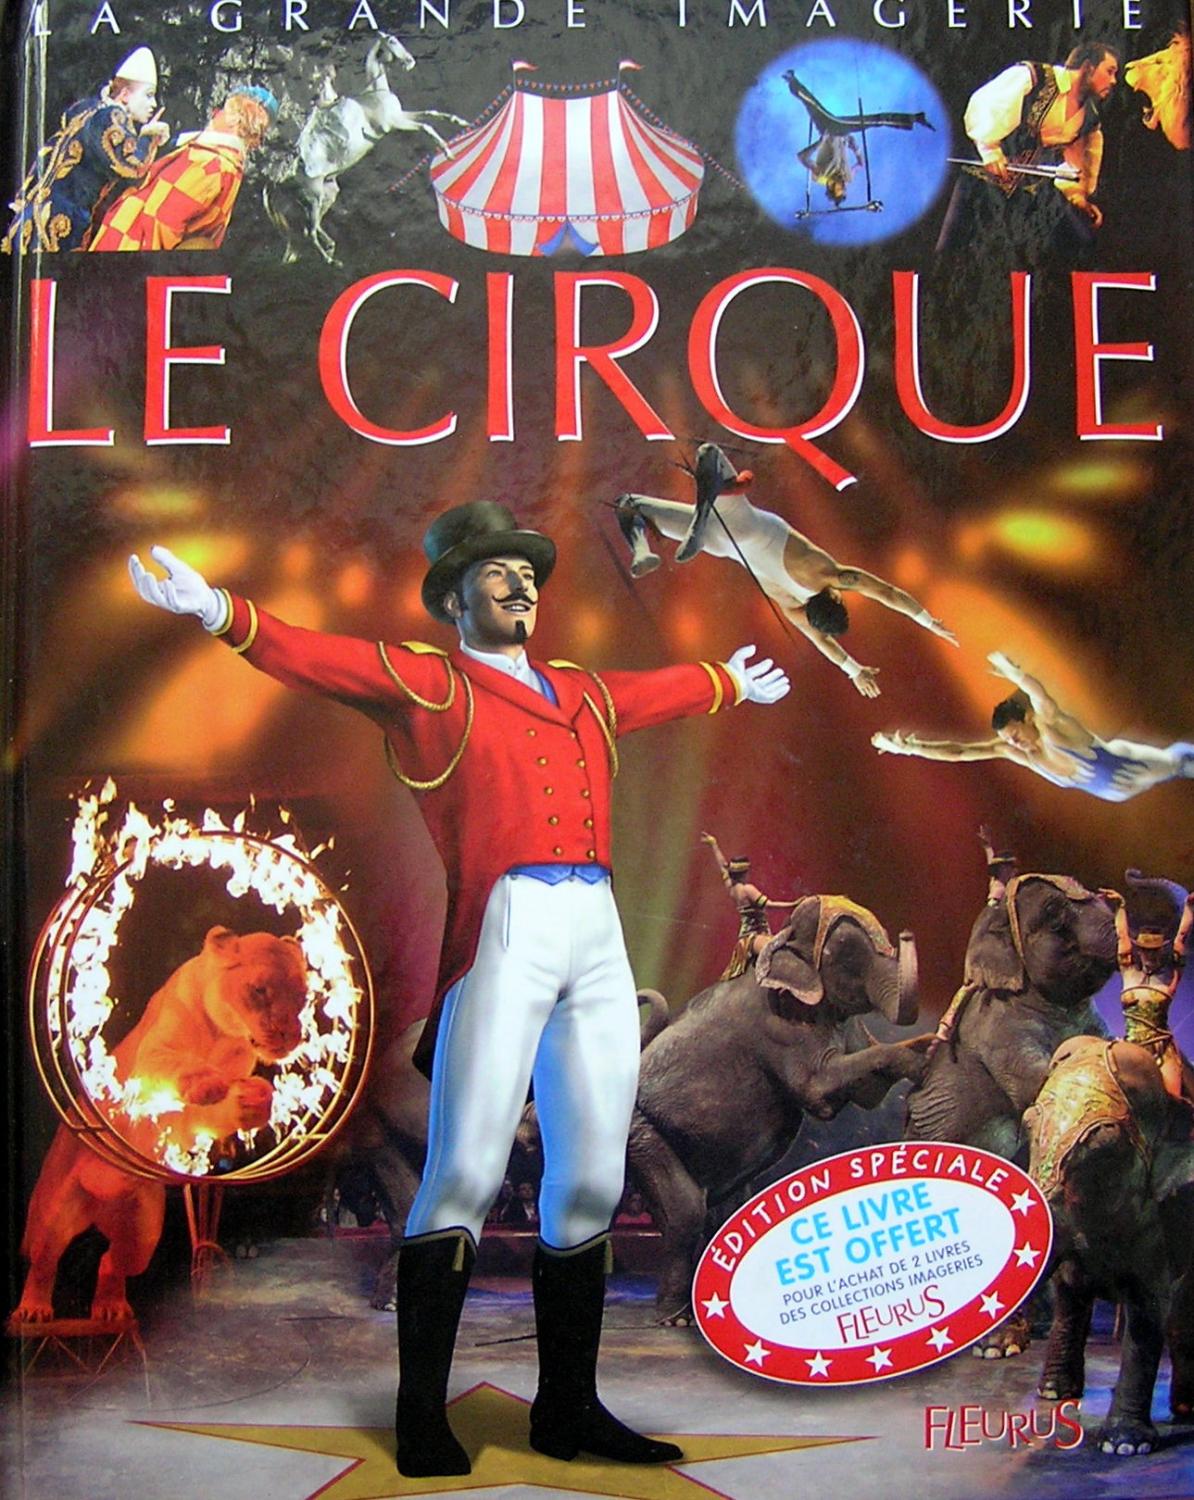 La grande imagerie : Le cirque - Cathy Franco